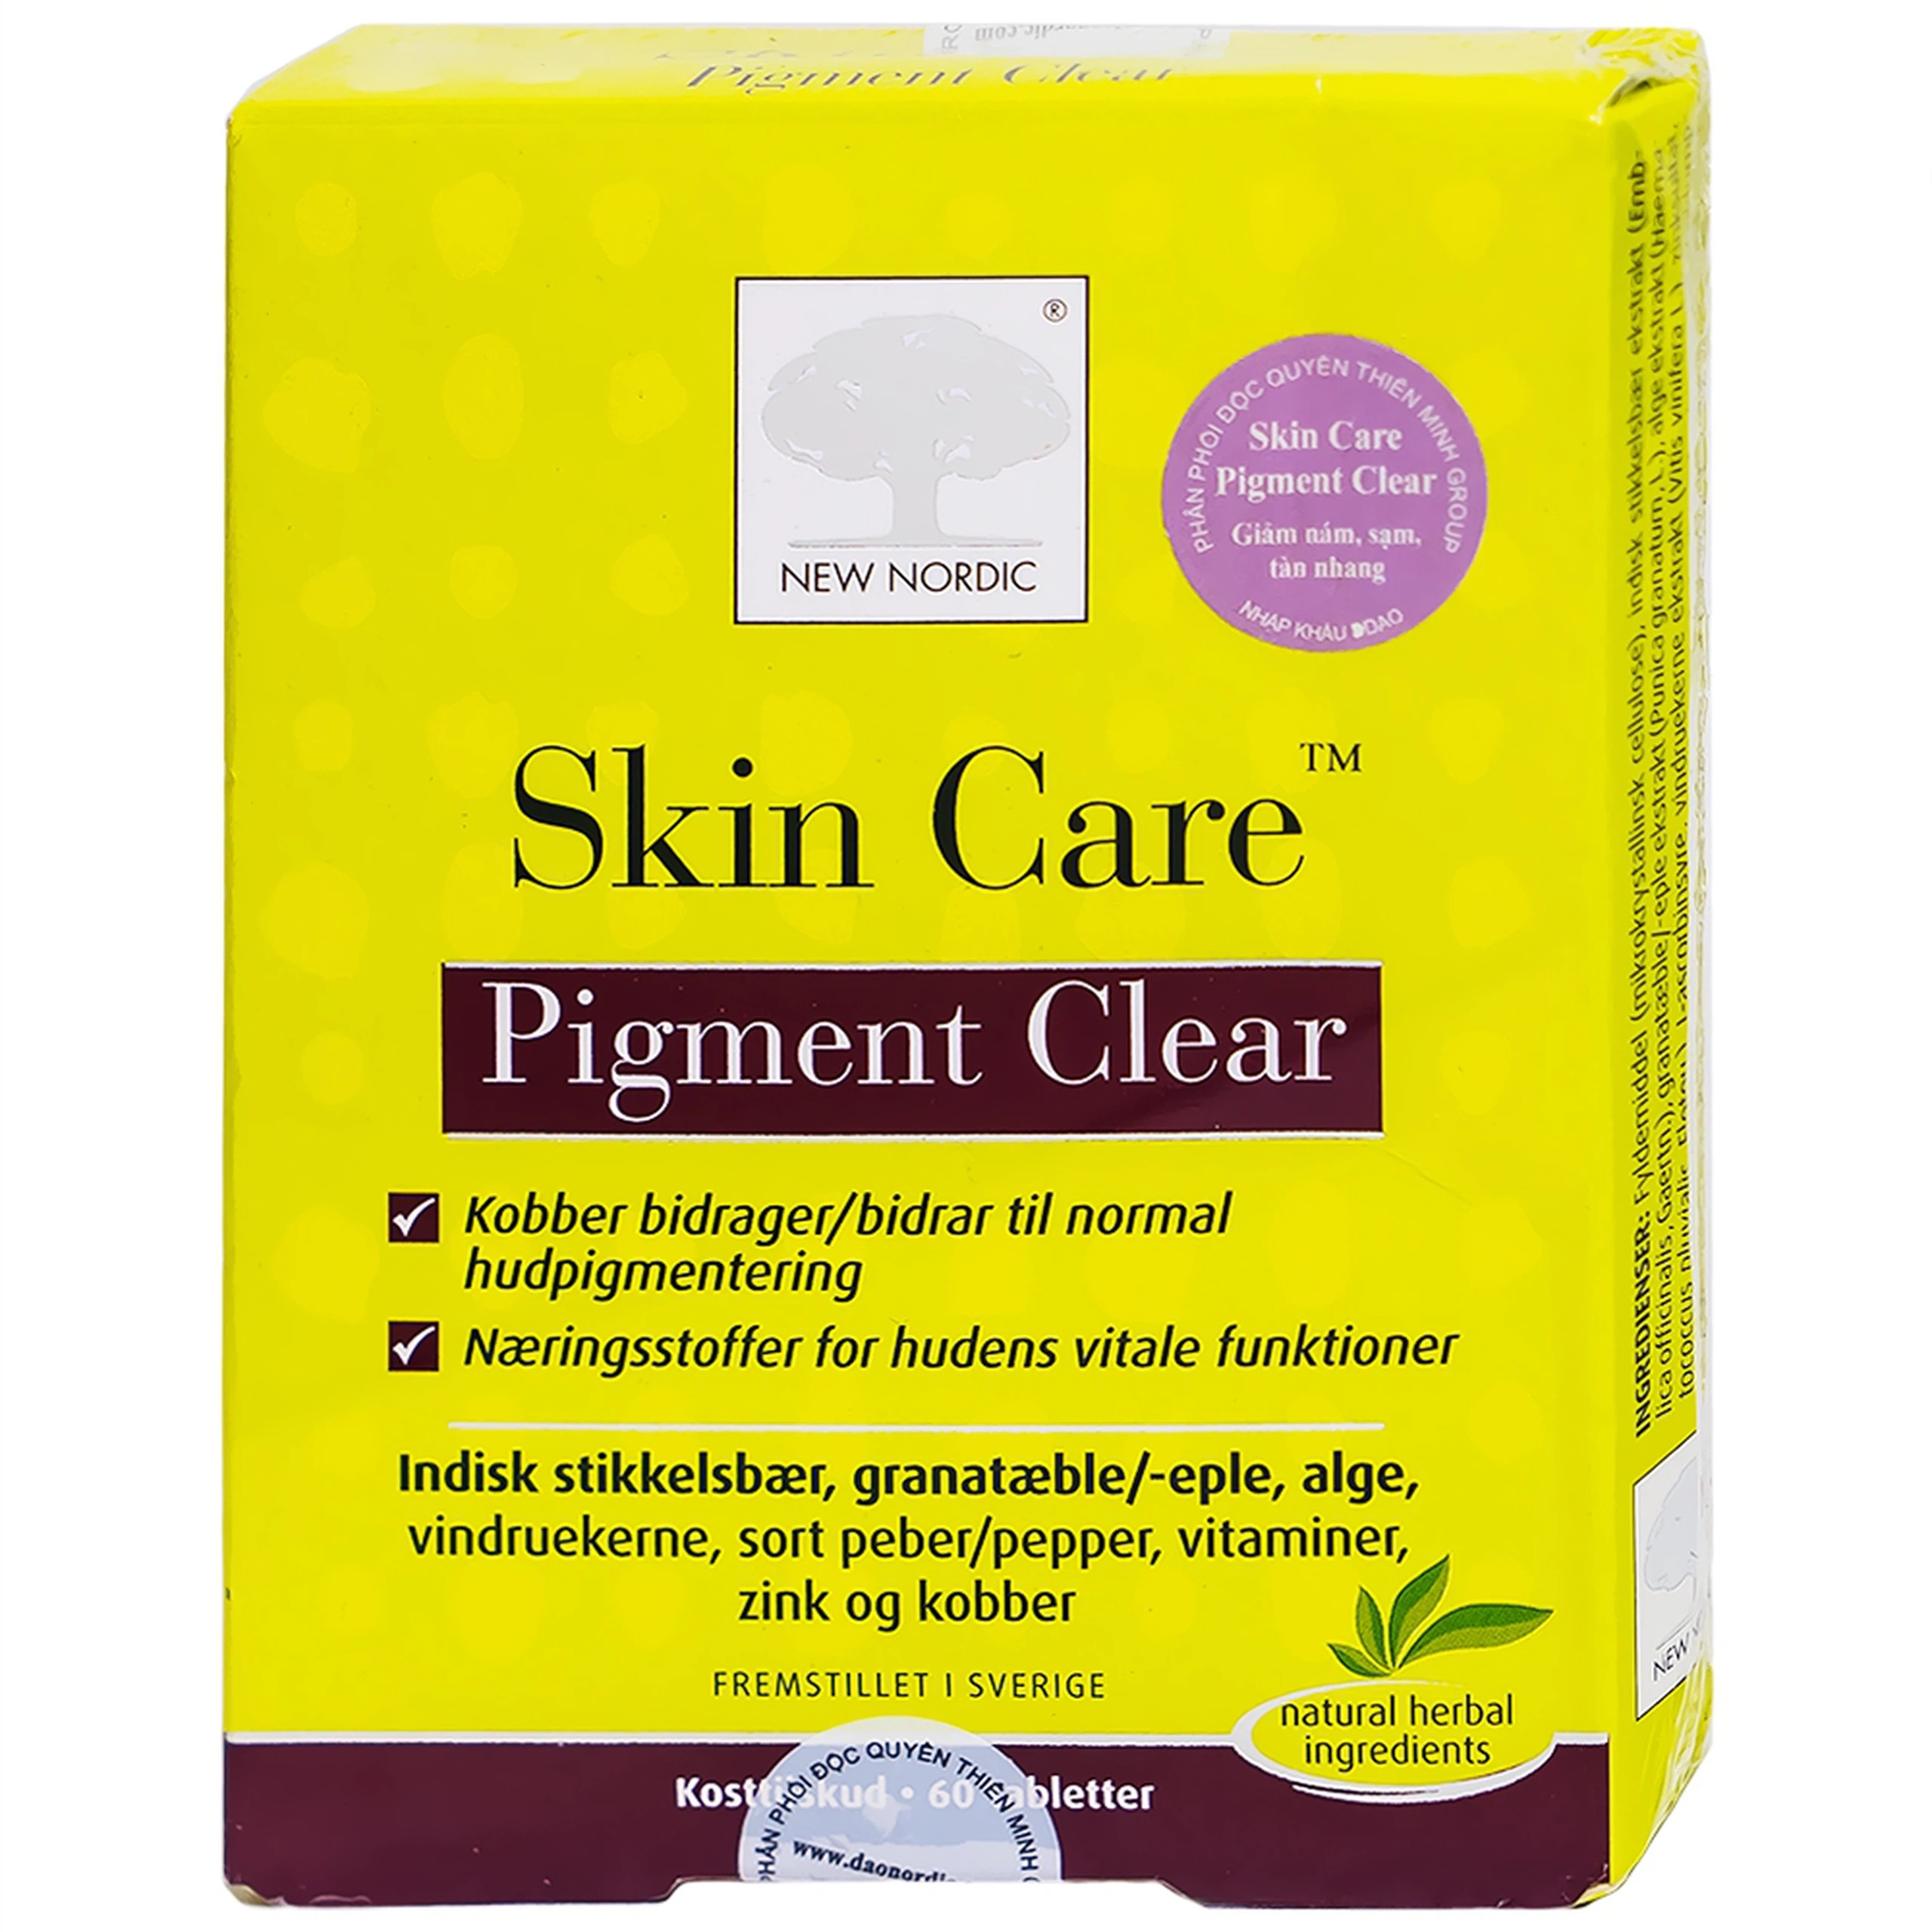 Viên uống Skin Care Pigment Clear New Nordic giảm các vết thâm nám, sạm, tàn nhang (60 viên)